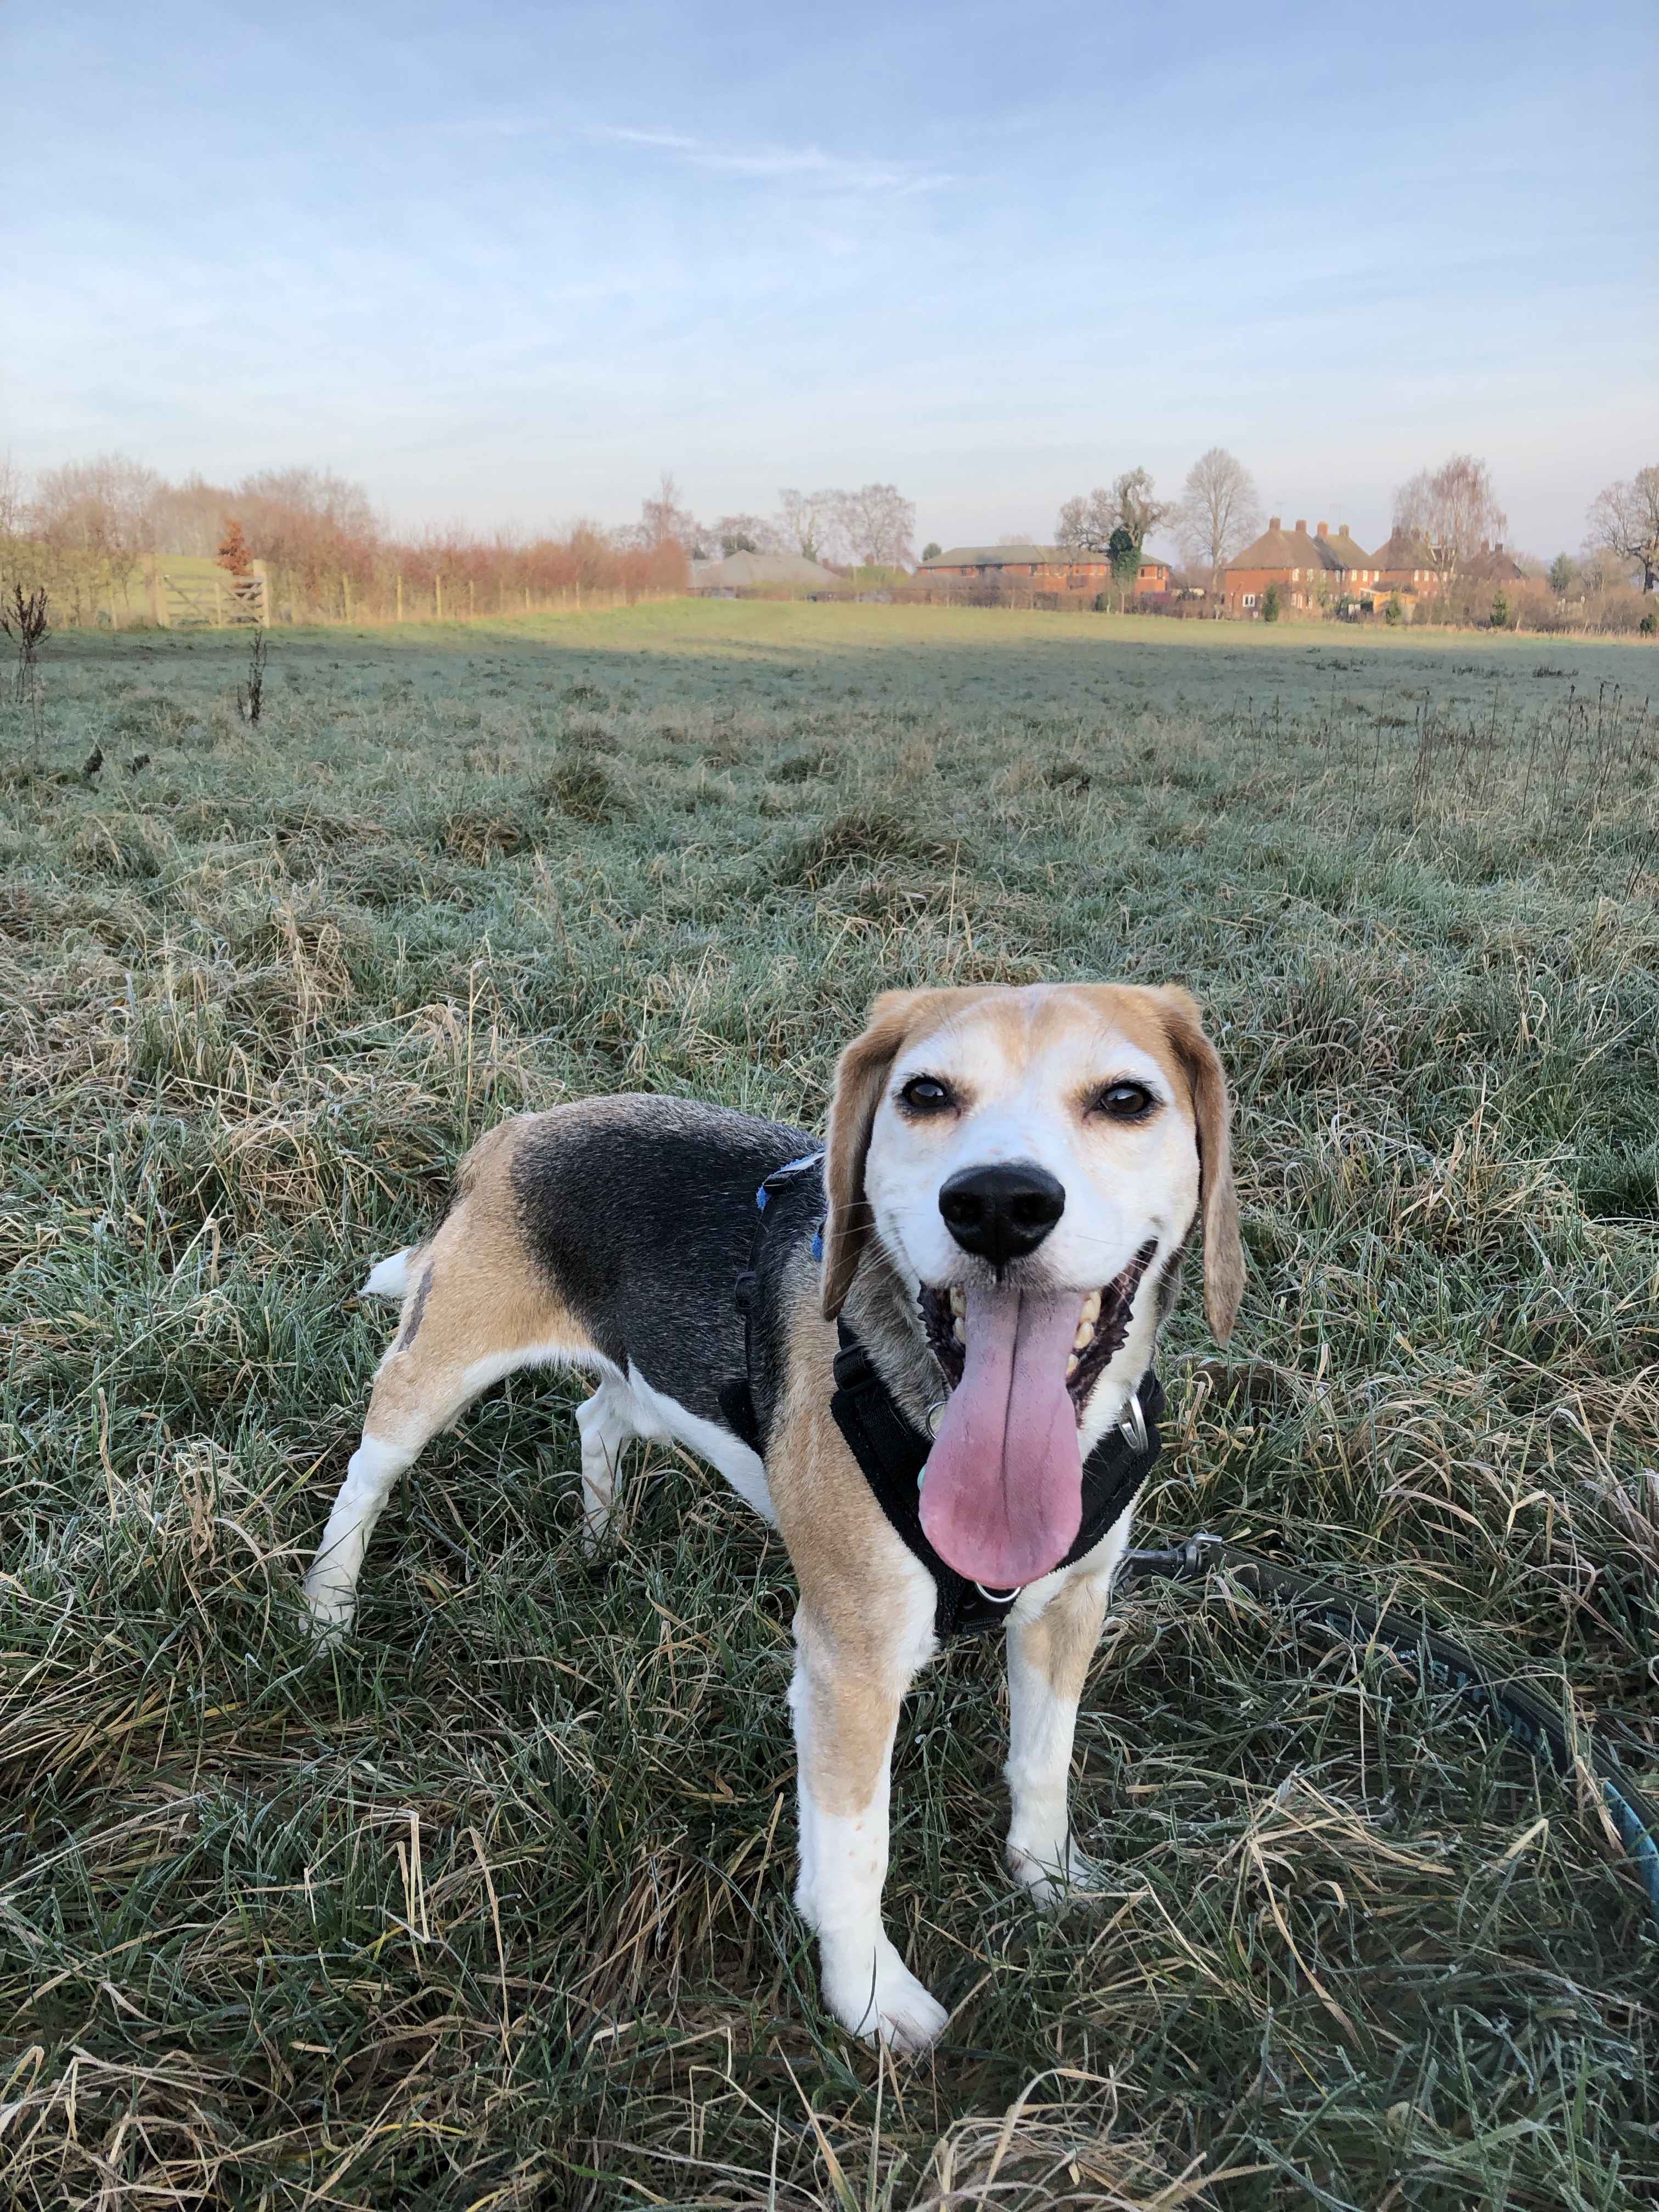 Dexter enjoying his walk in the fields.